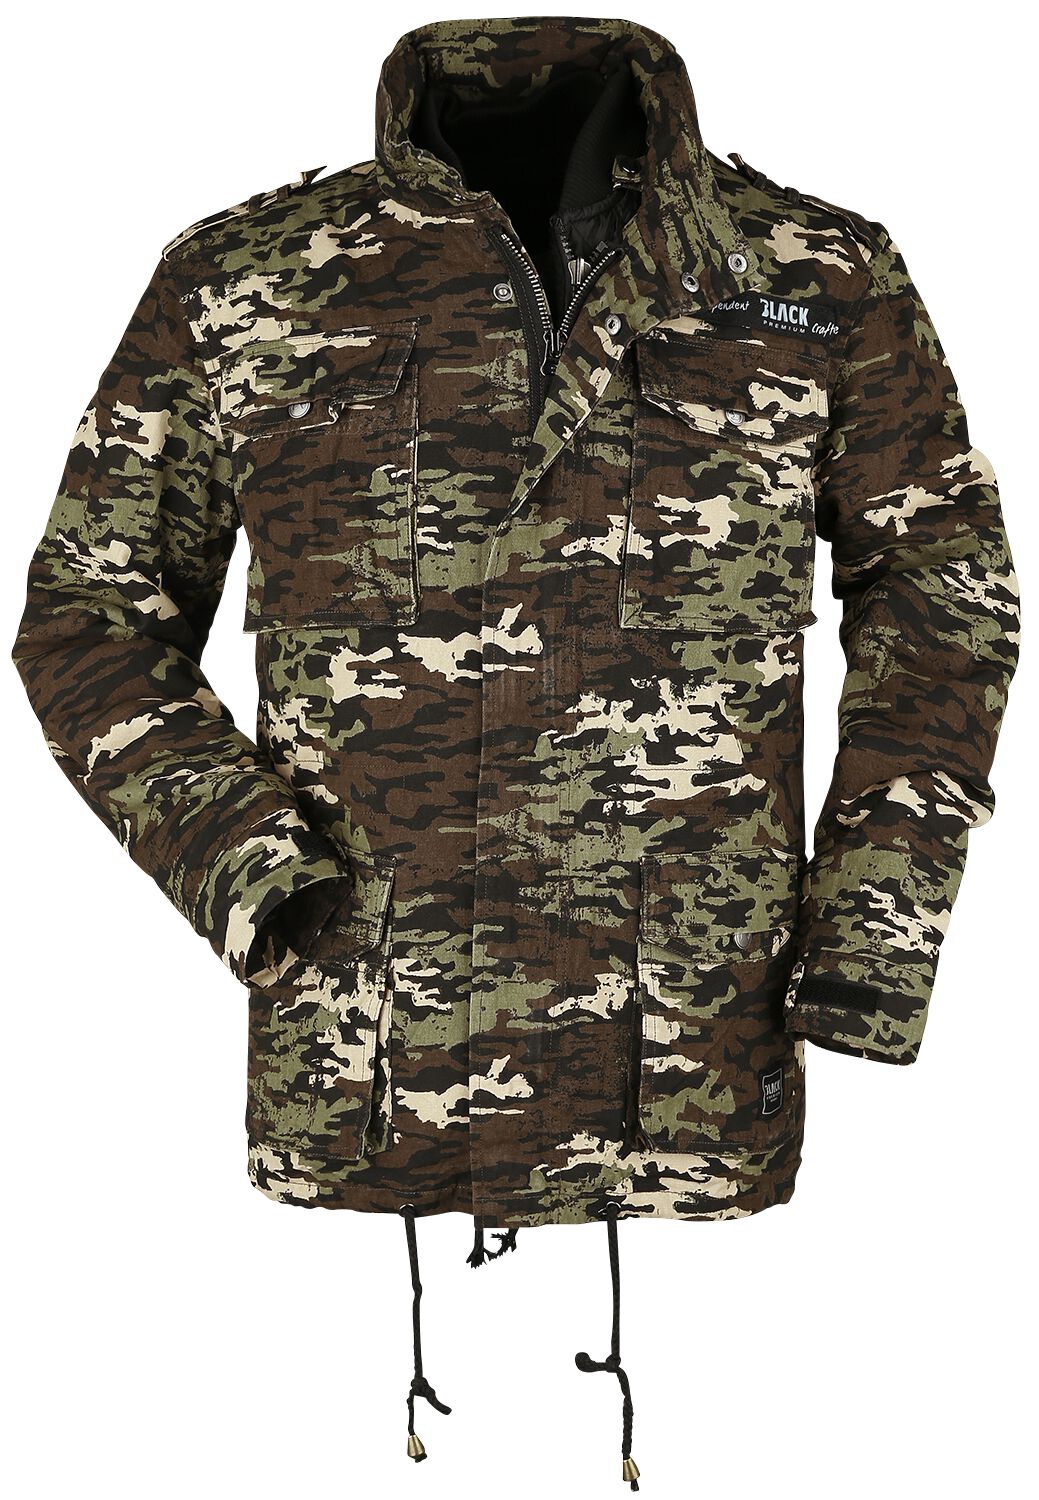 Black Premium by EMP Winterjacke - Army Field Jacket - S bis XXL - für Männer - Größe S - darkcamo